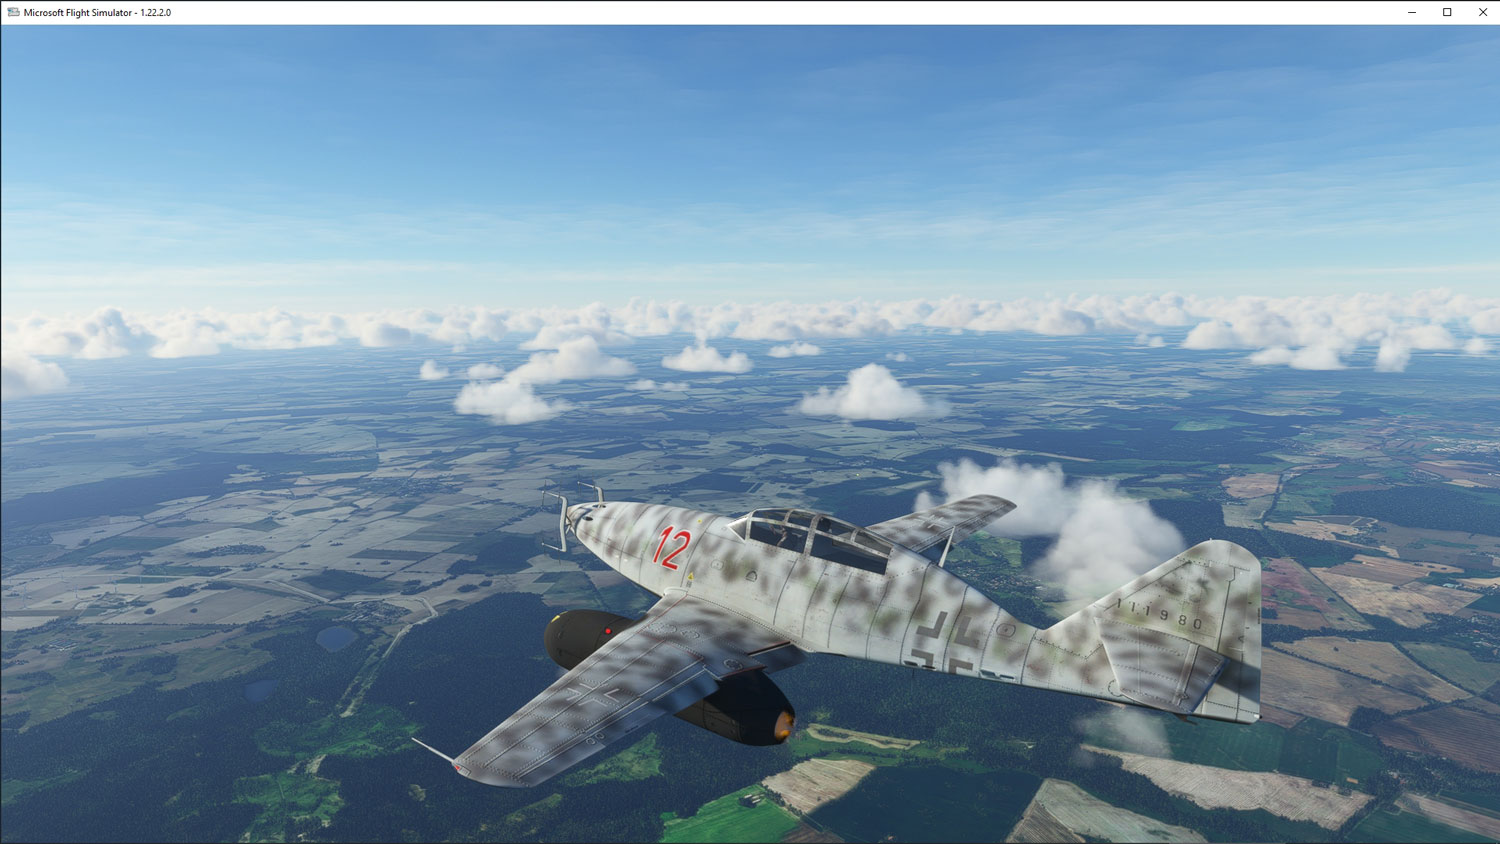 Romantic Wings - Luftwaffe Jet Age MSFS